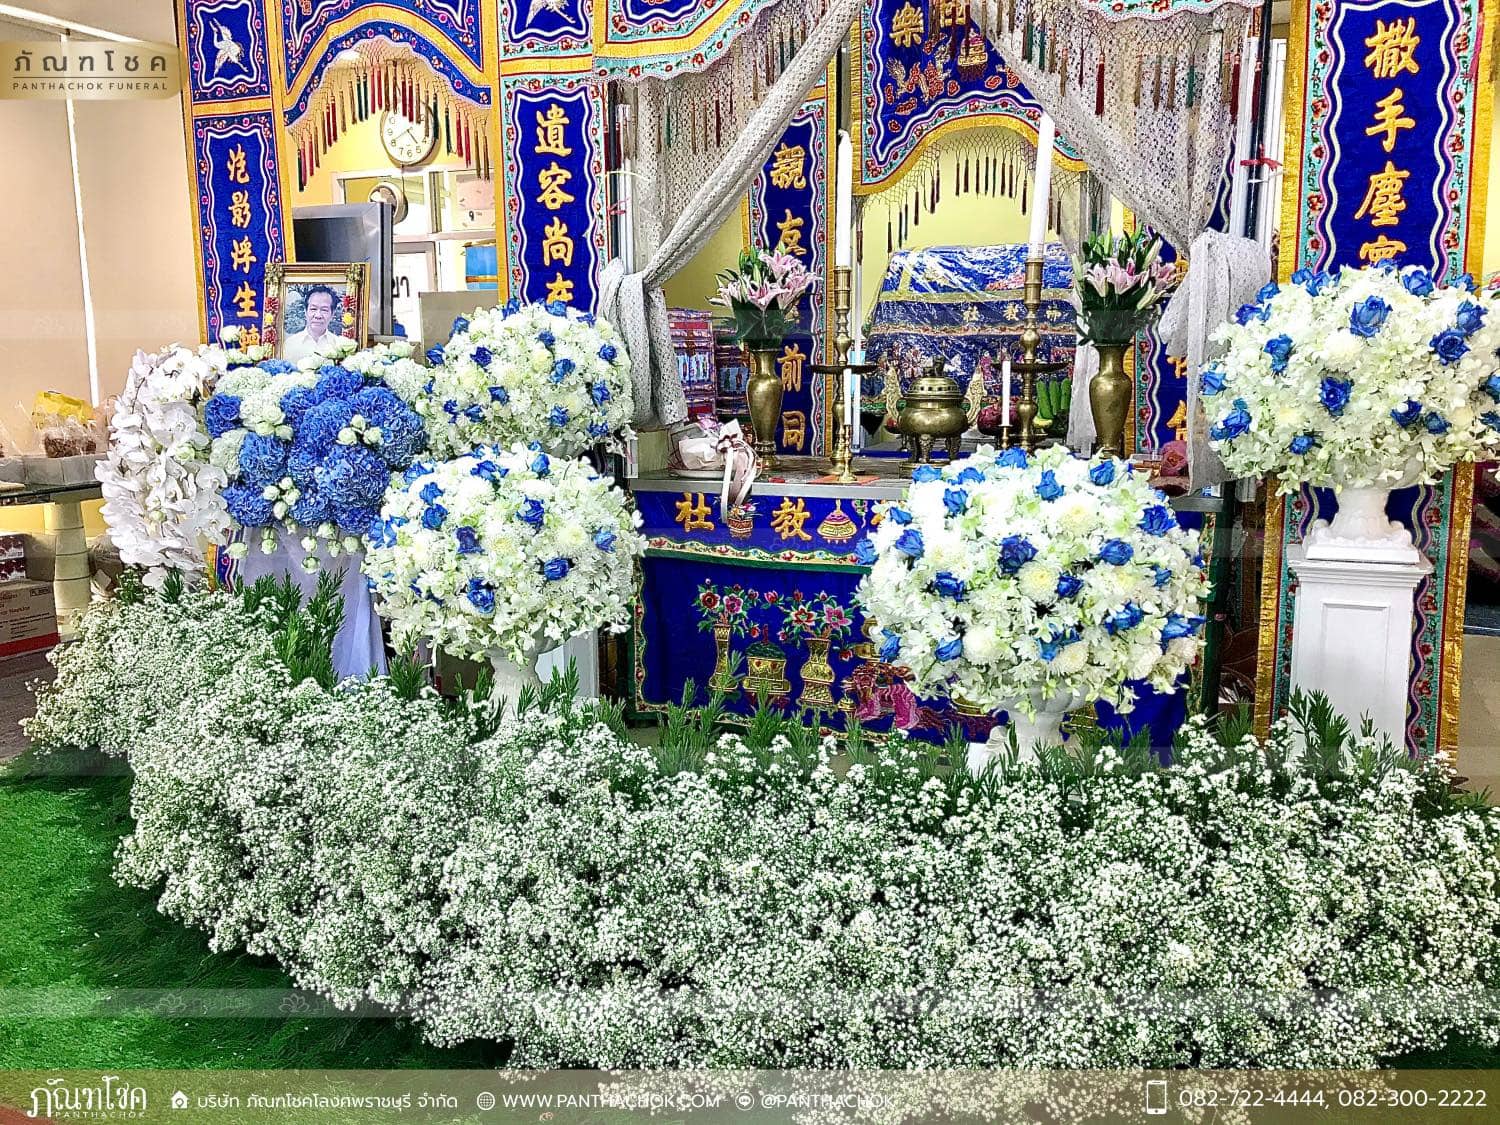 ชุดดอกไม้งานศพ วัดเทพศิรินทราวาส ราชวรวิหาร 1